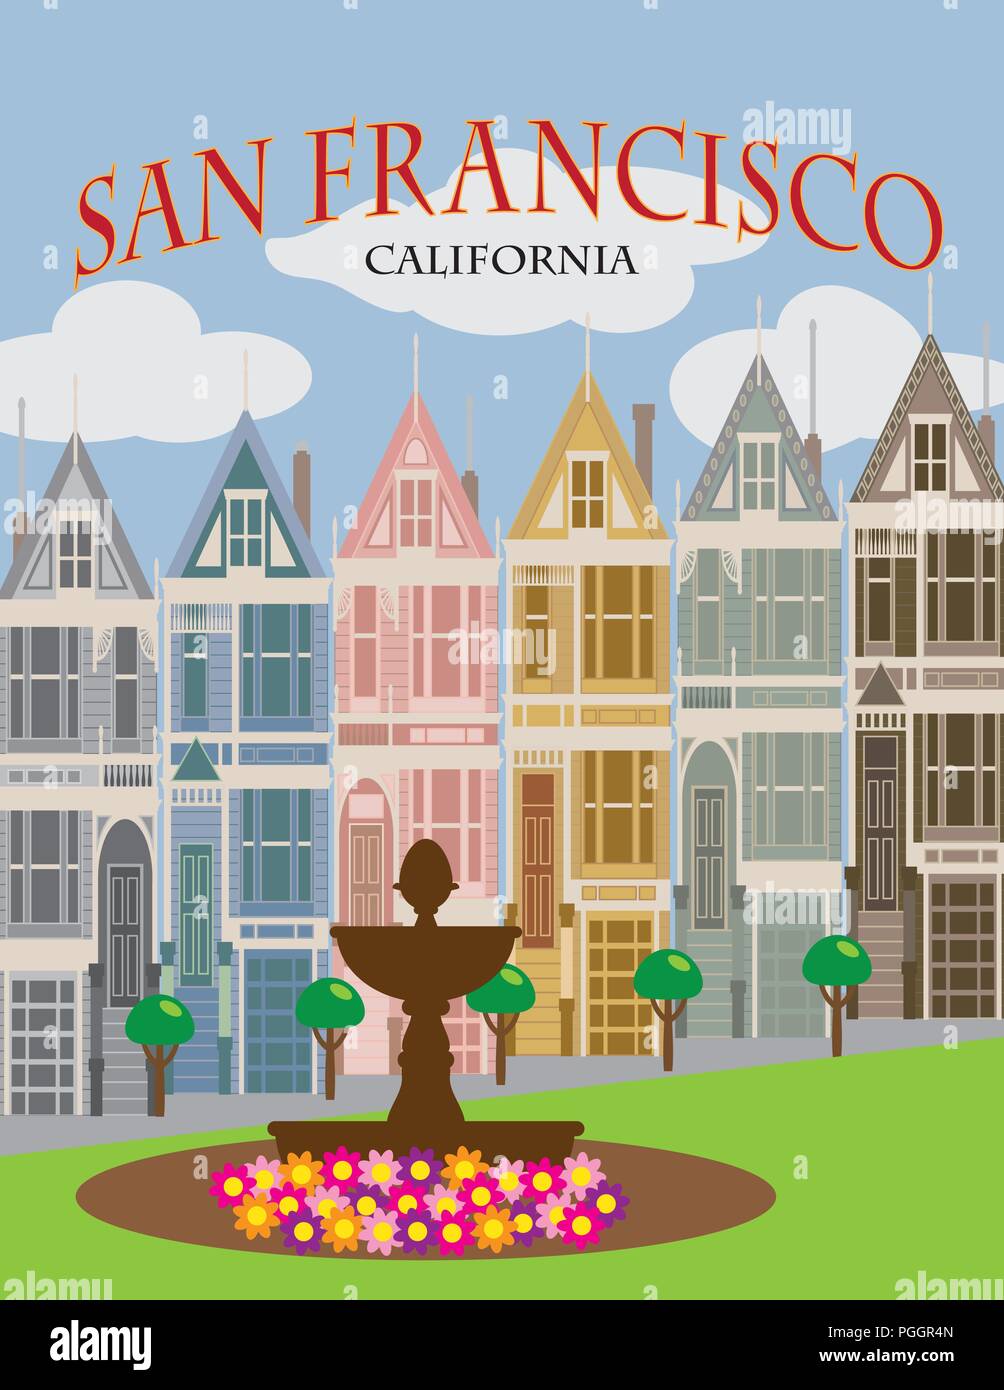 Damas Pintadas hilera de casas de estilo victoriano y eduardiano en San Francisco California póster en color ilustración Ilustración del Vector